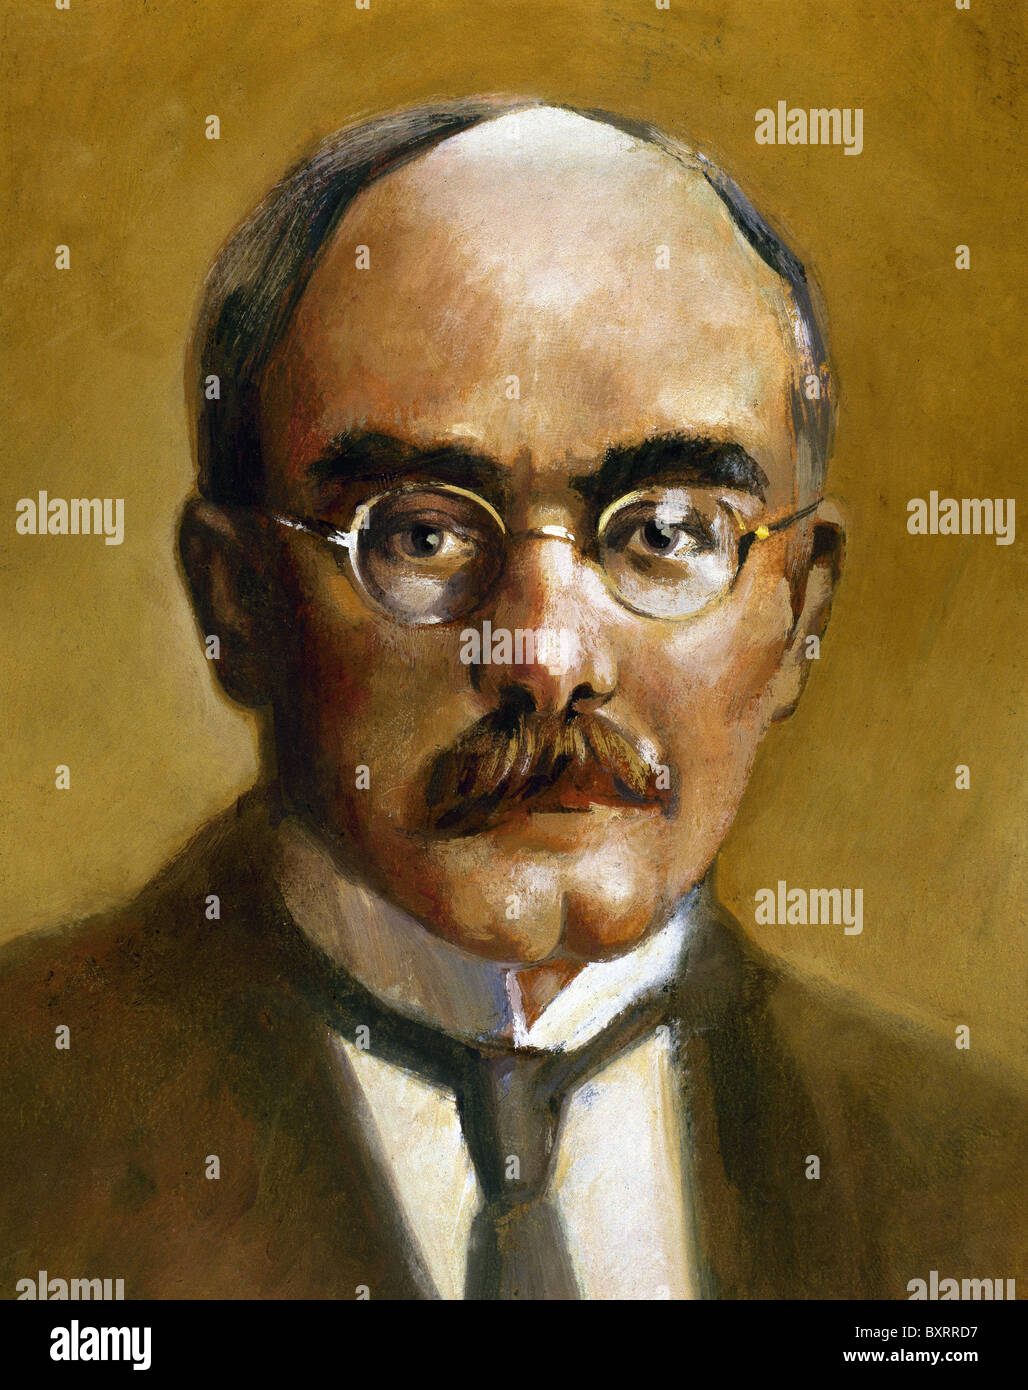 Kipling, Rudyard (1865-1936). Inglese a breve storia dello scrittore, poeta e romanziere. Premio Nobel per la letteratura nel 1907. Foto Stock